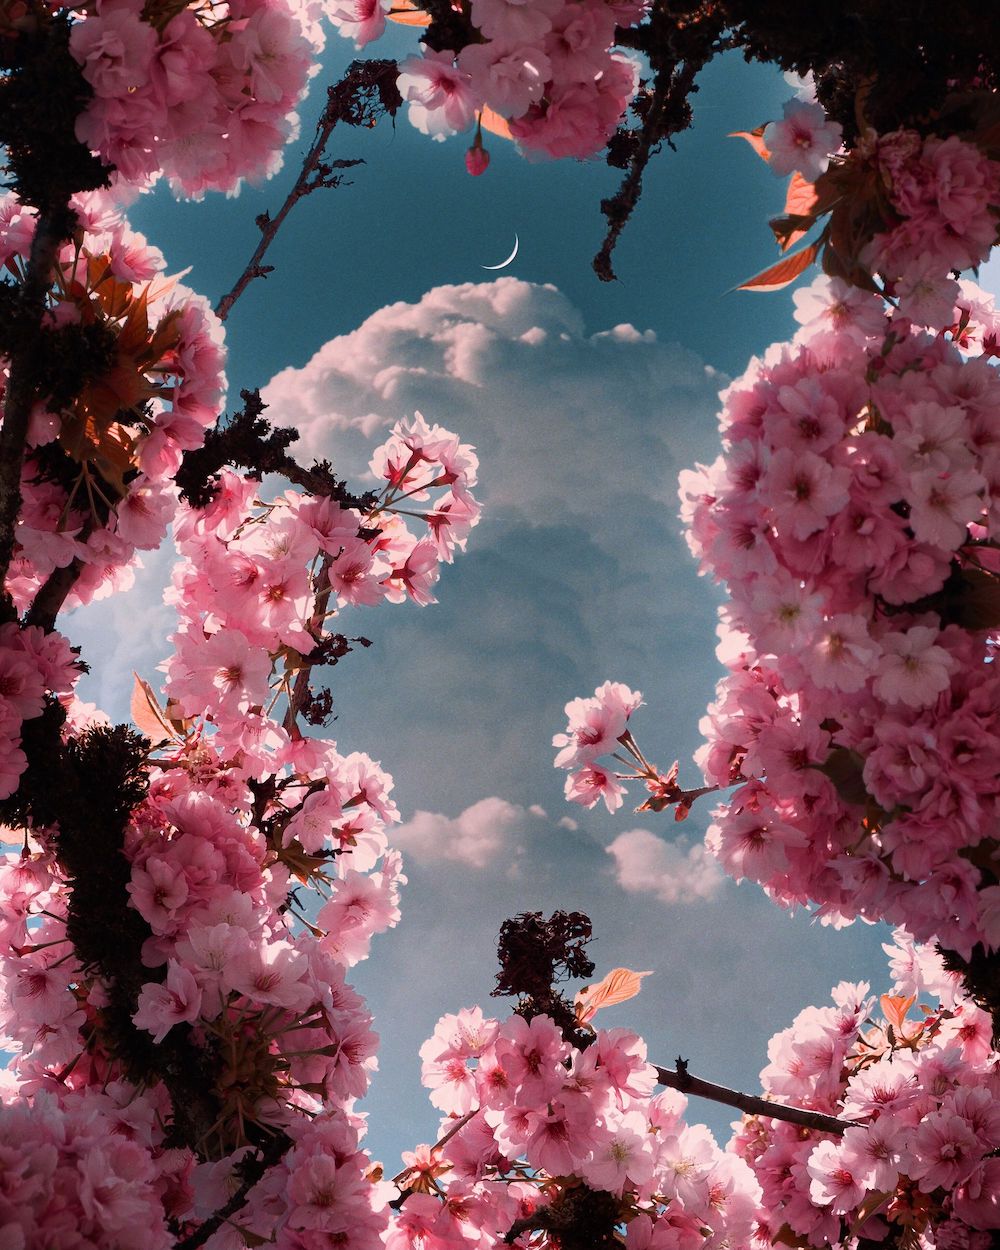 Flowers Bloom in Sophia Ahamed's 'Dark Night' Photography Series Floral Art